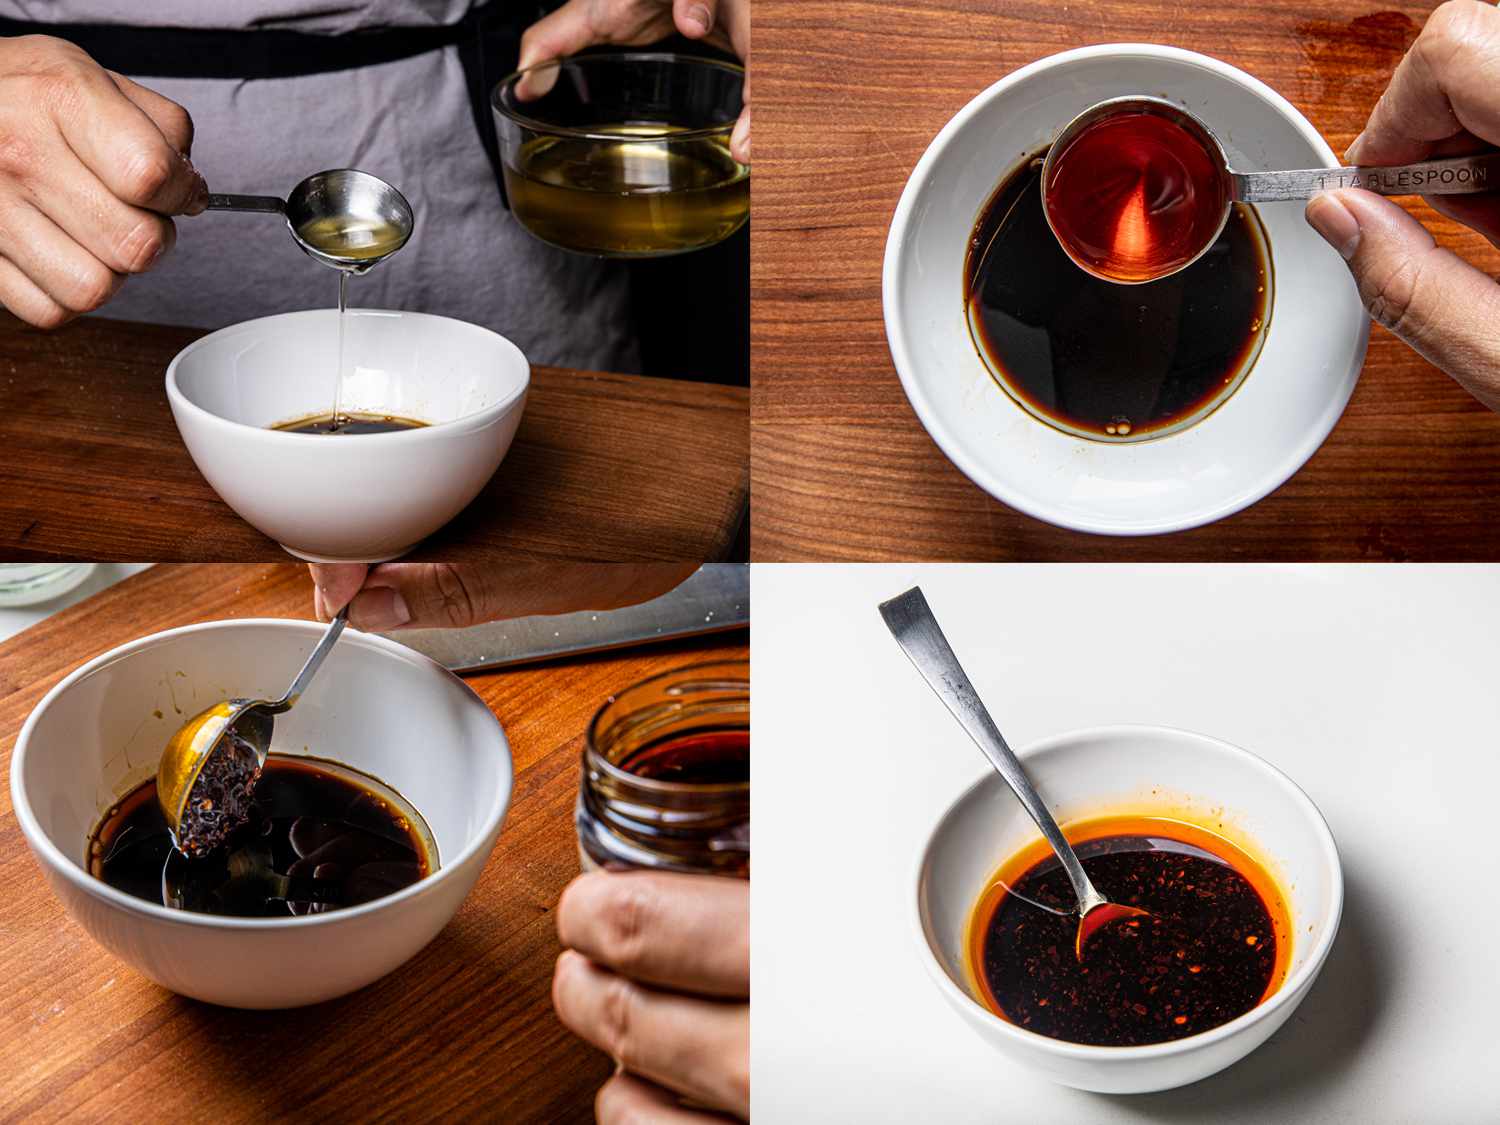 四图像拼贴。左上:调味油被加到碗里。右上:辣椒油被加入调味料中。左下:加入调味料的辣椒脆。右下:用勺子在一个白色的碗里完成调味